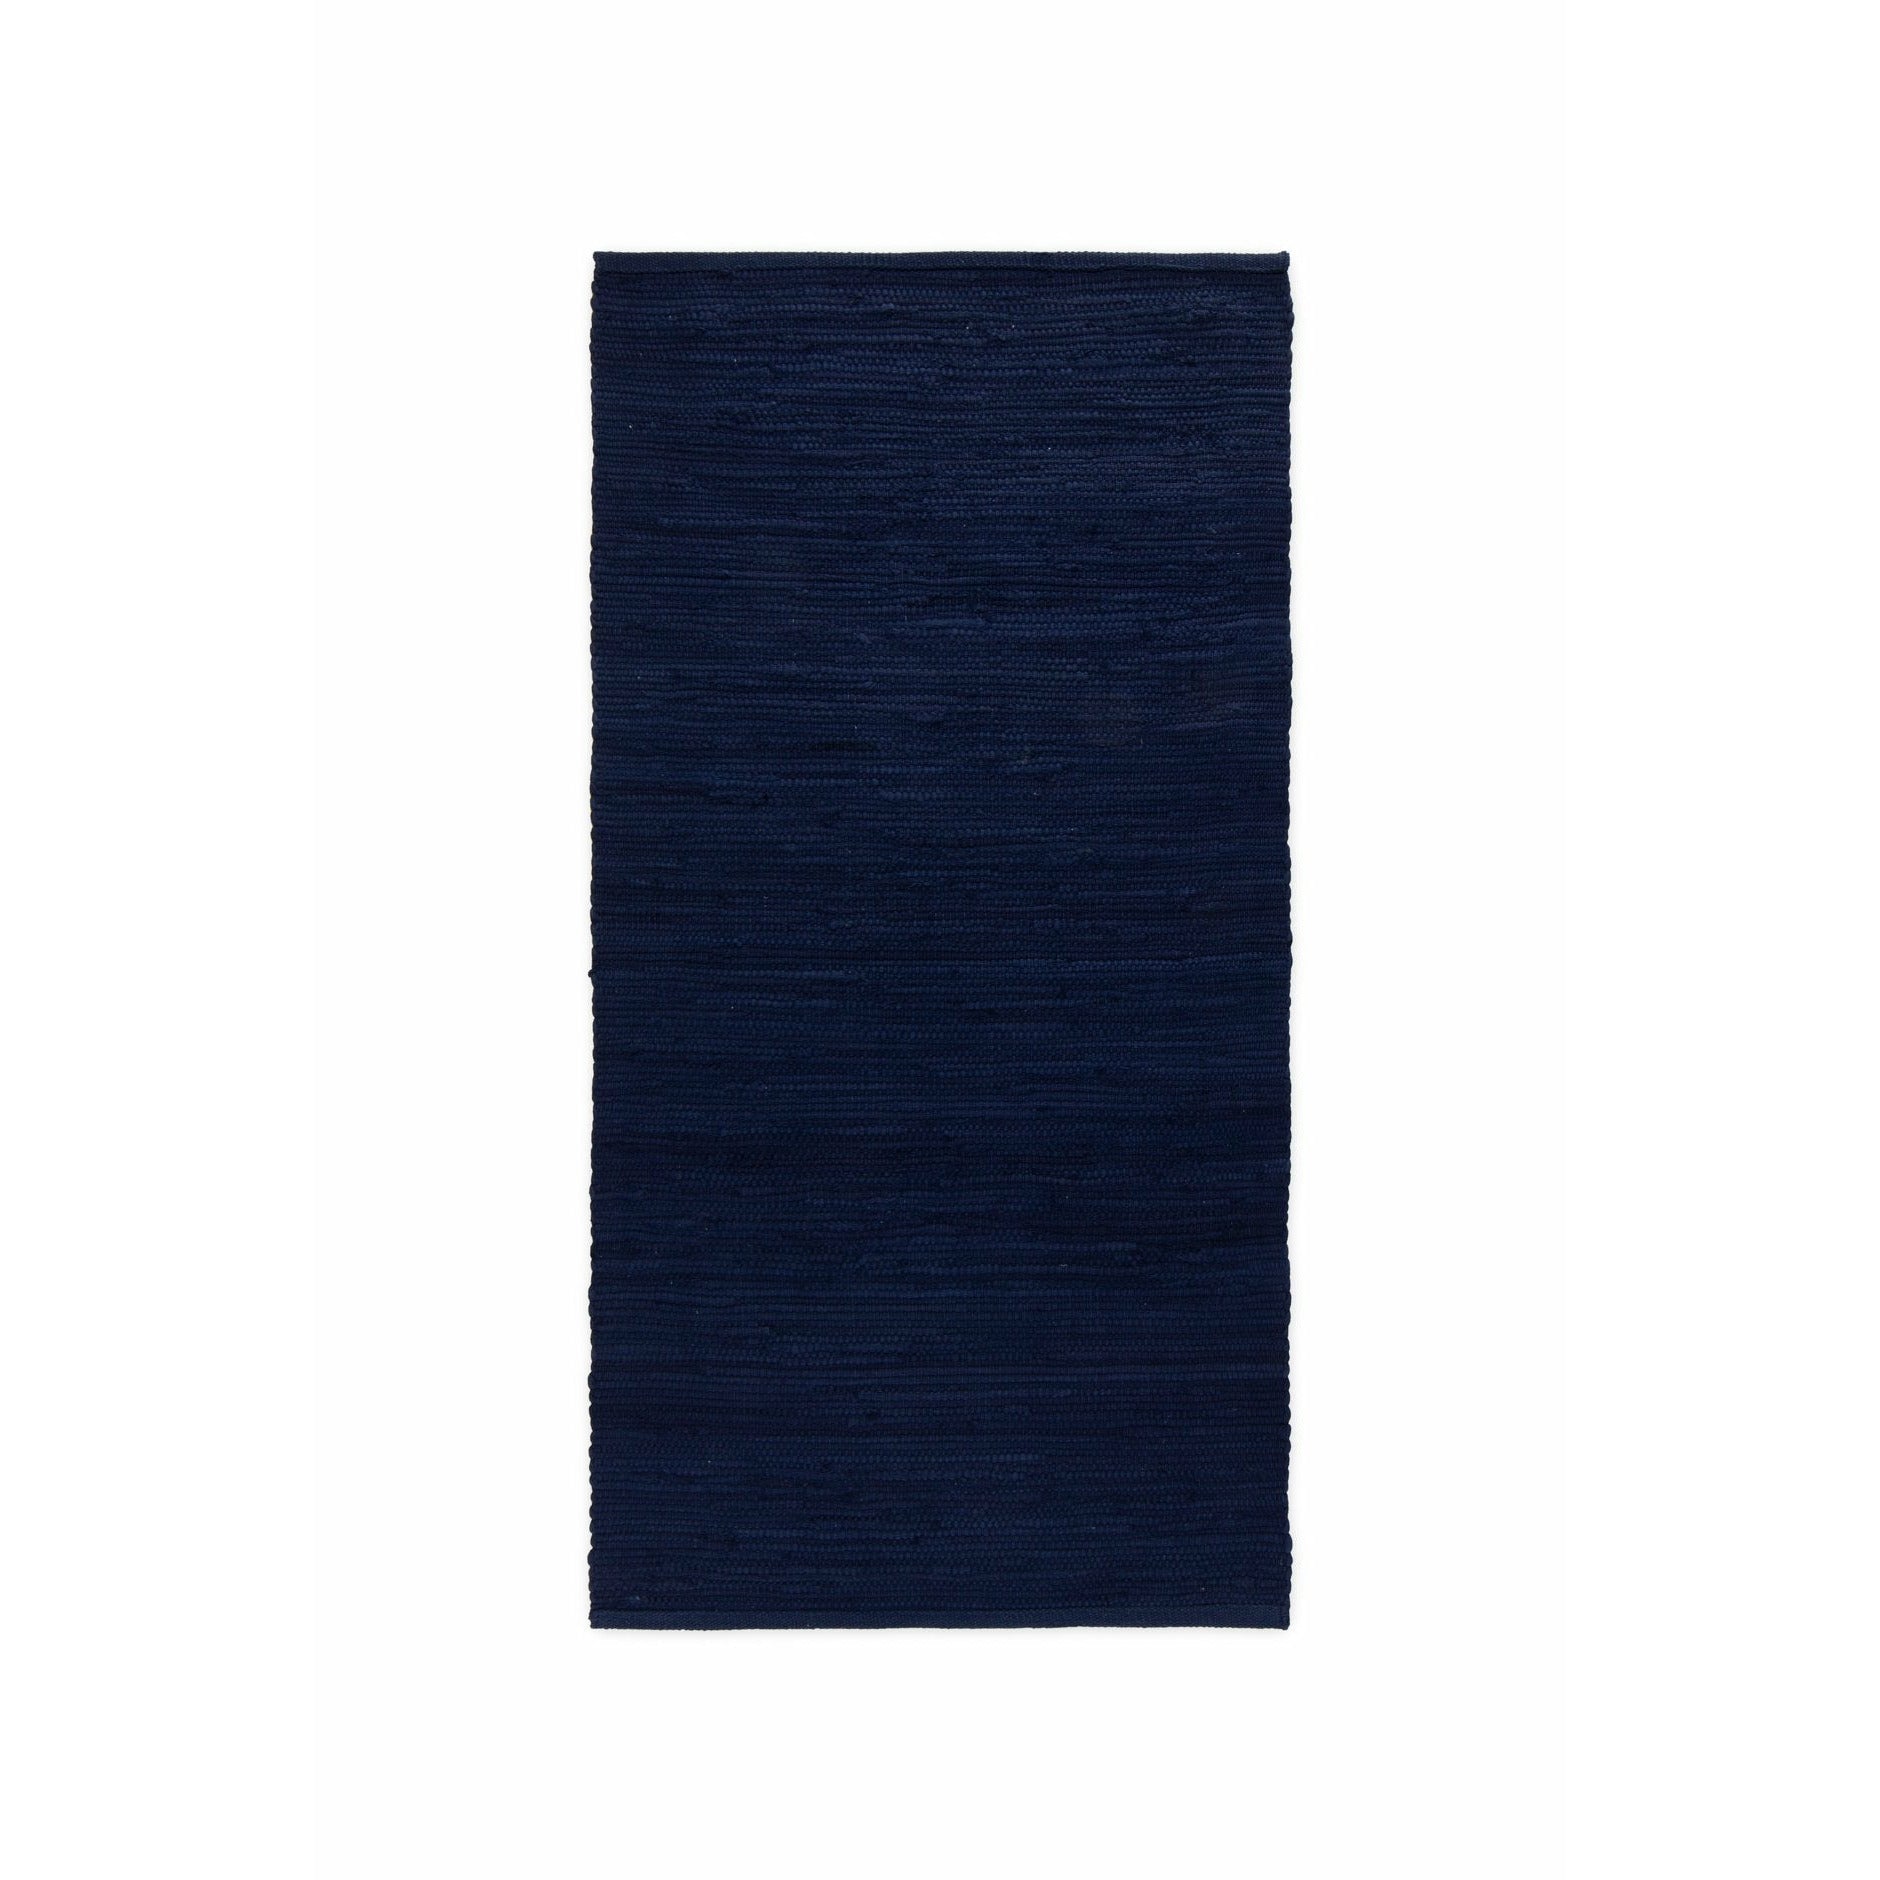 Tappeto di cotone solido in cotone profondo oceano blu, 140 x 200 cm